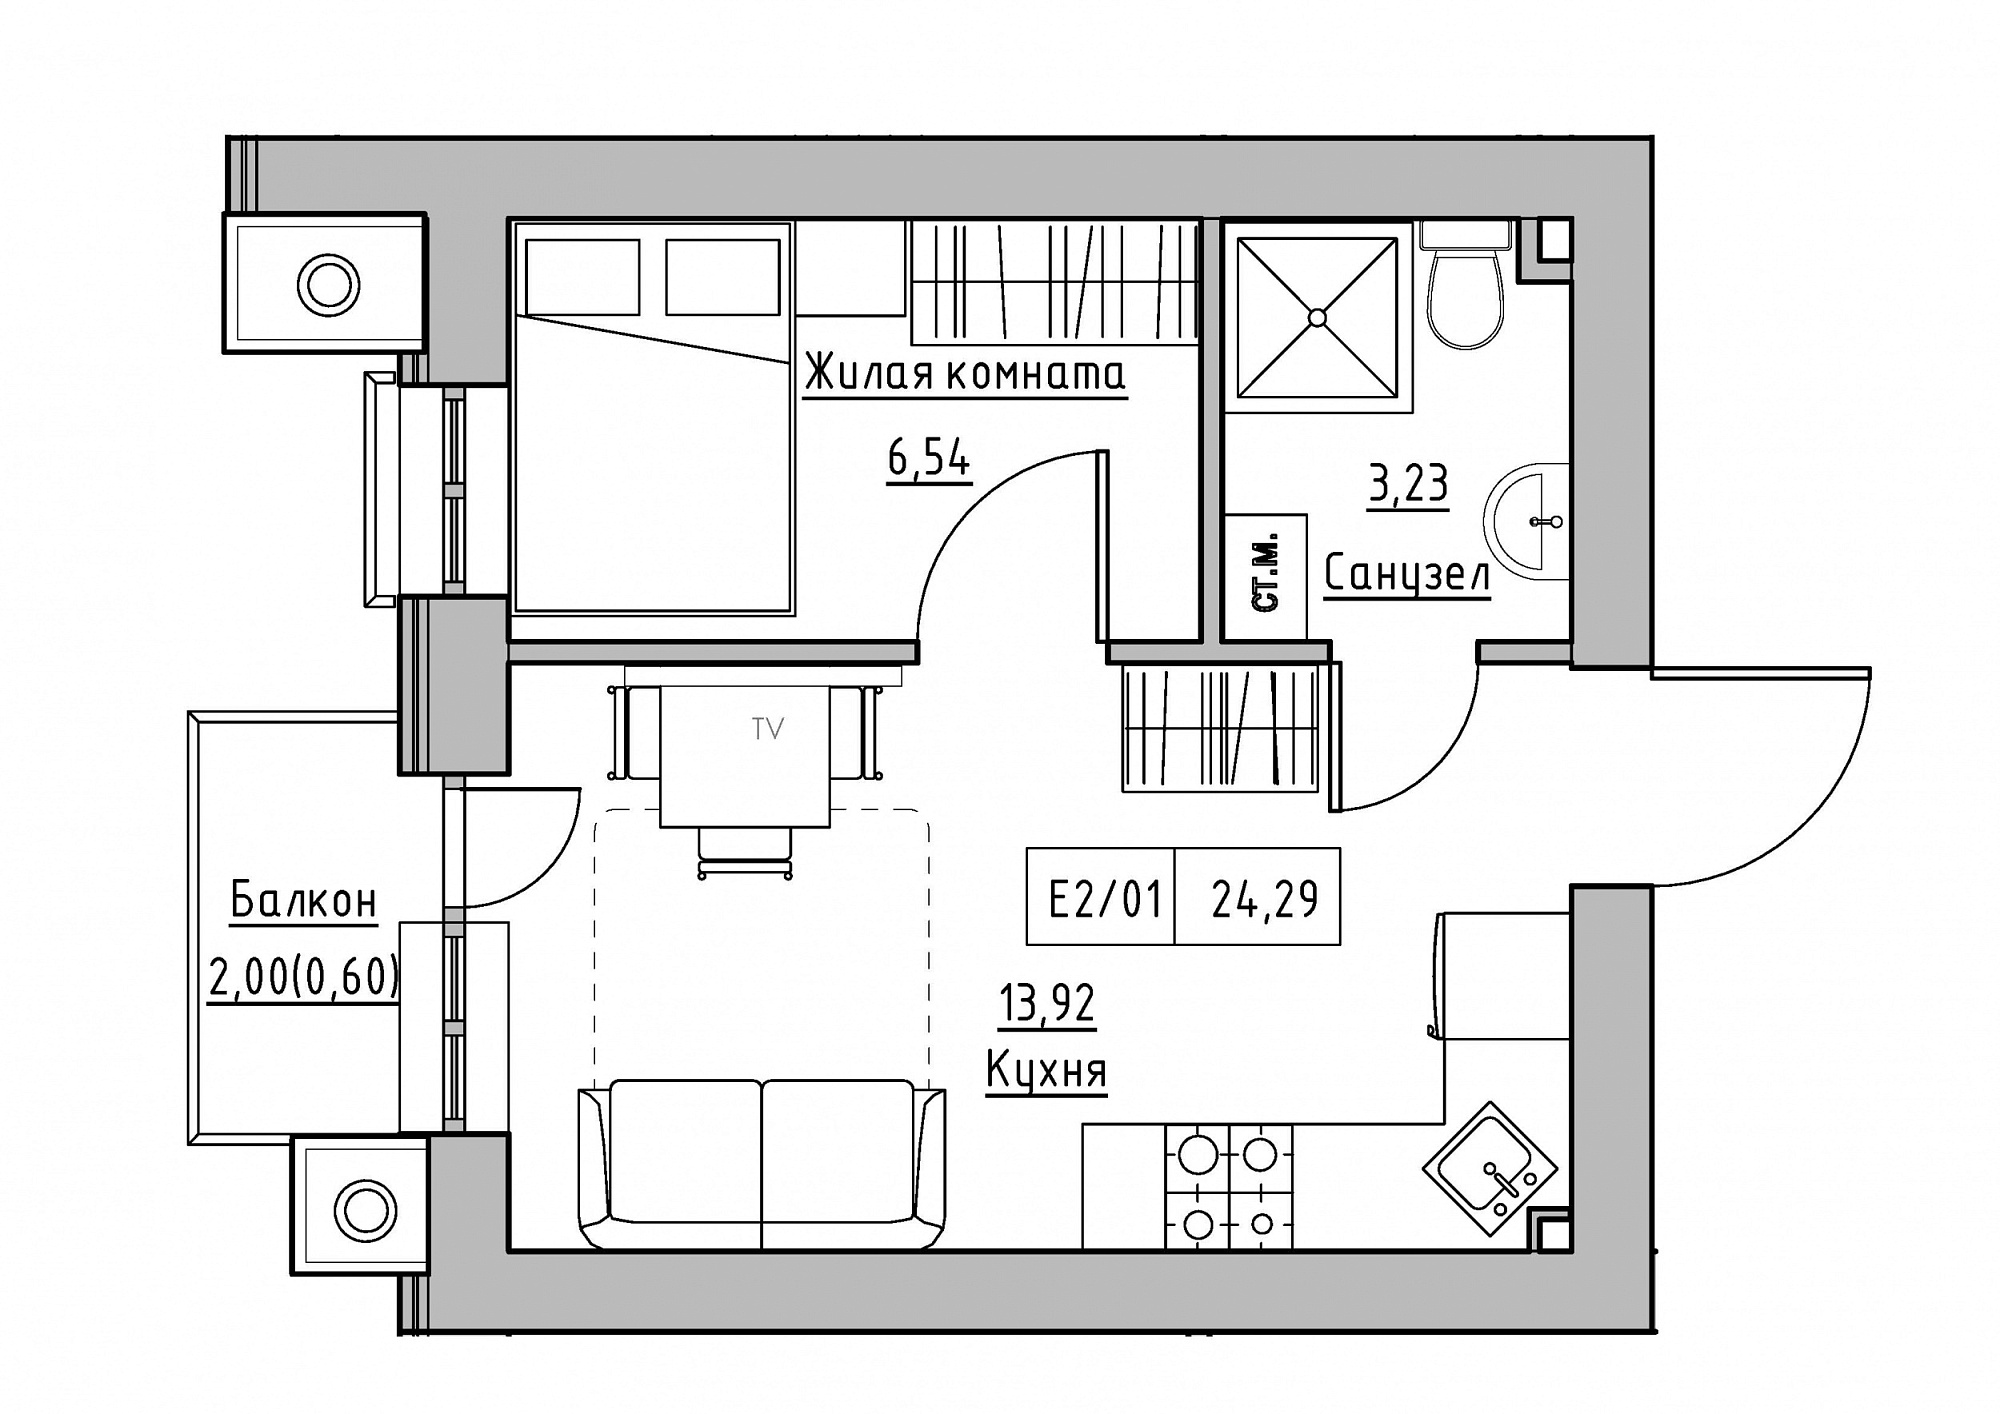 Планування 1-к квартира площею 24.29м2, KS-012-02/0009.